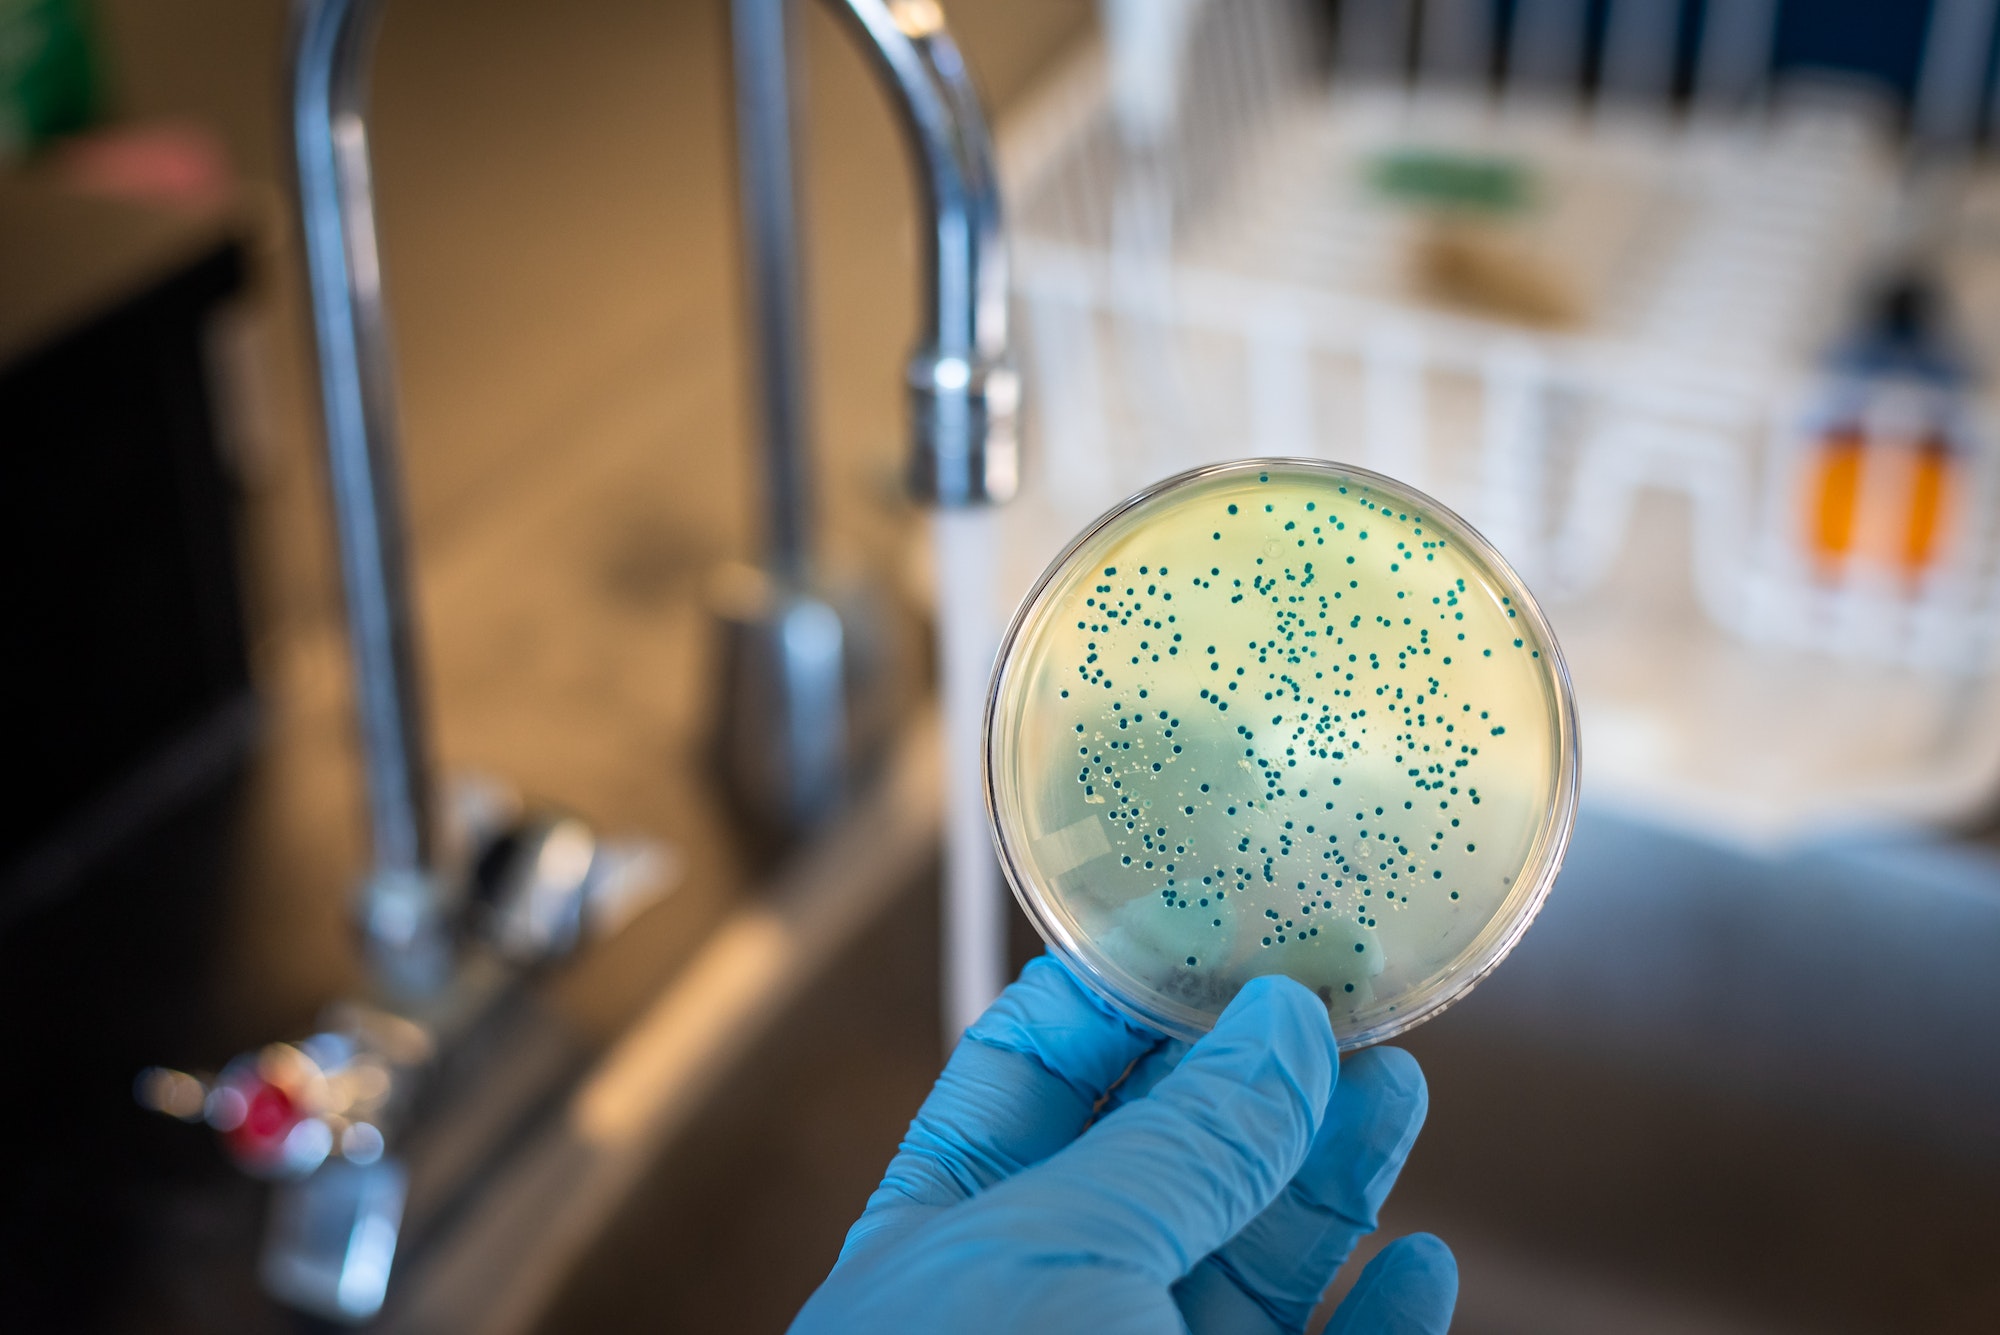 Water contamination with E. coli